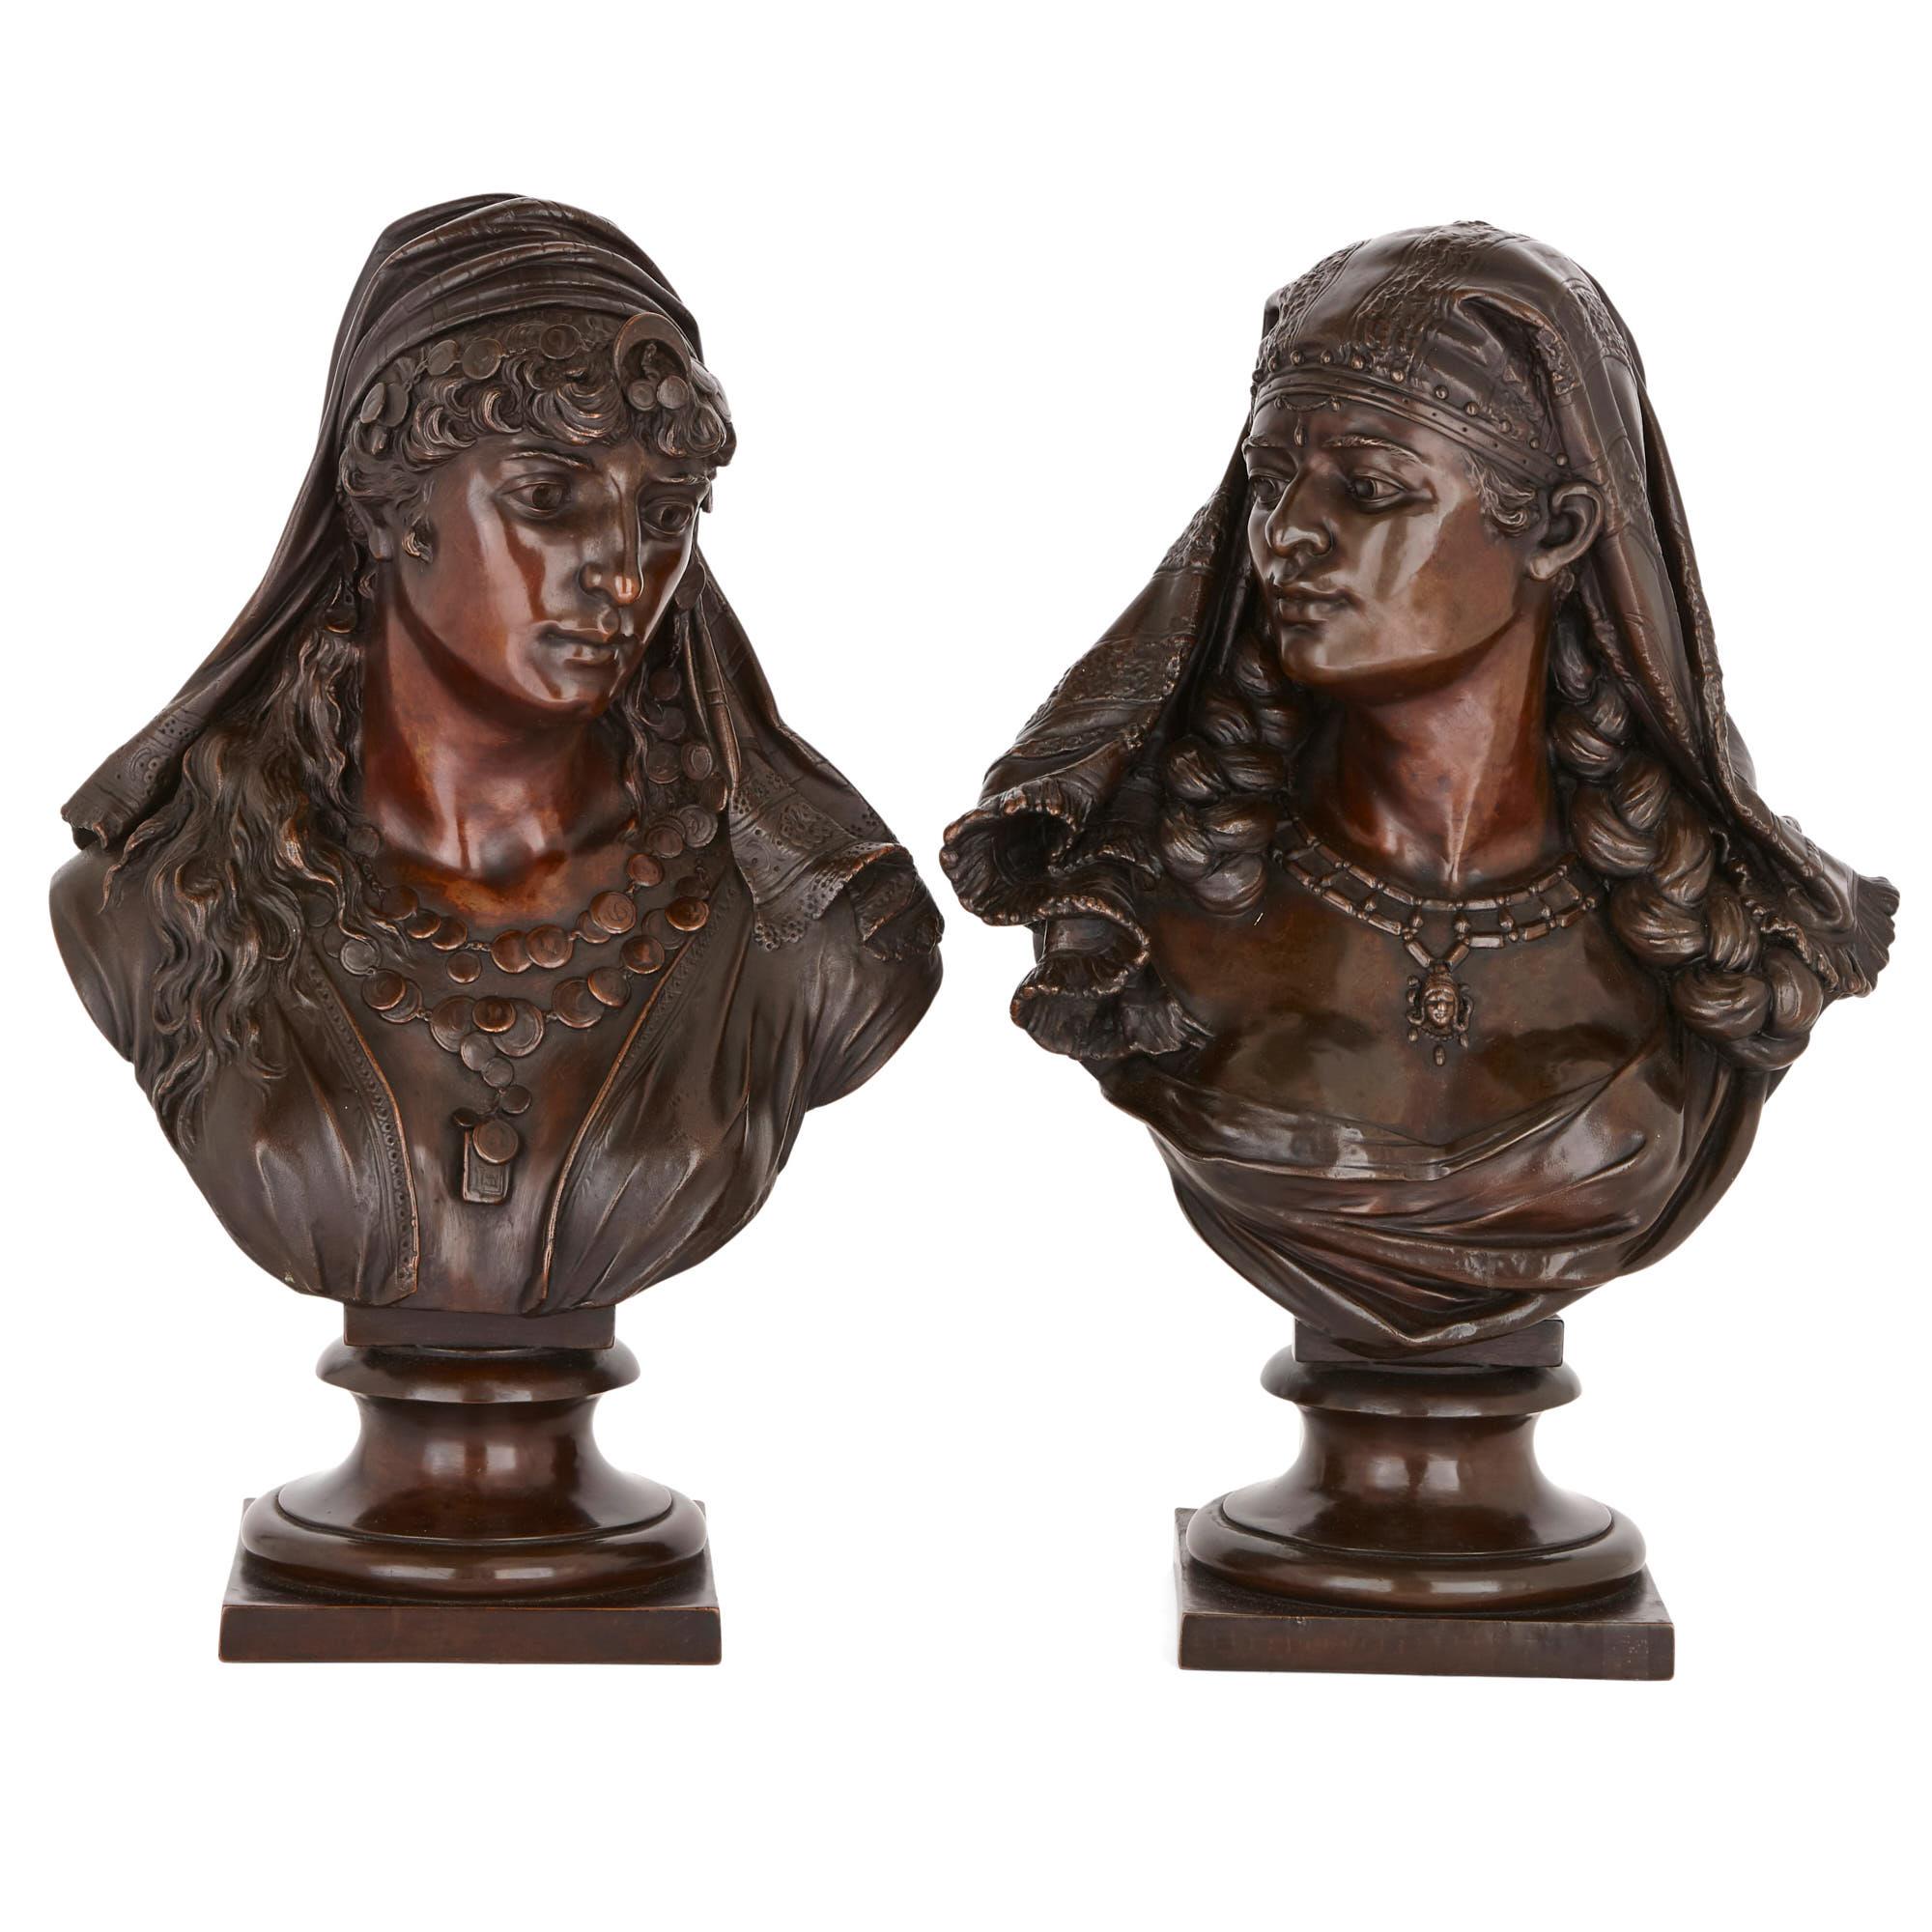 Deux bustes orientalistes en étain représentant des figures féminines